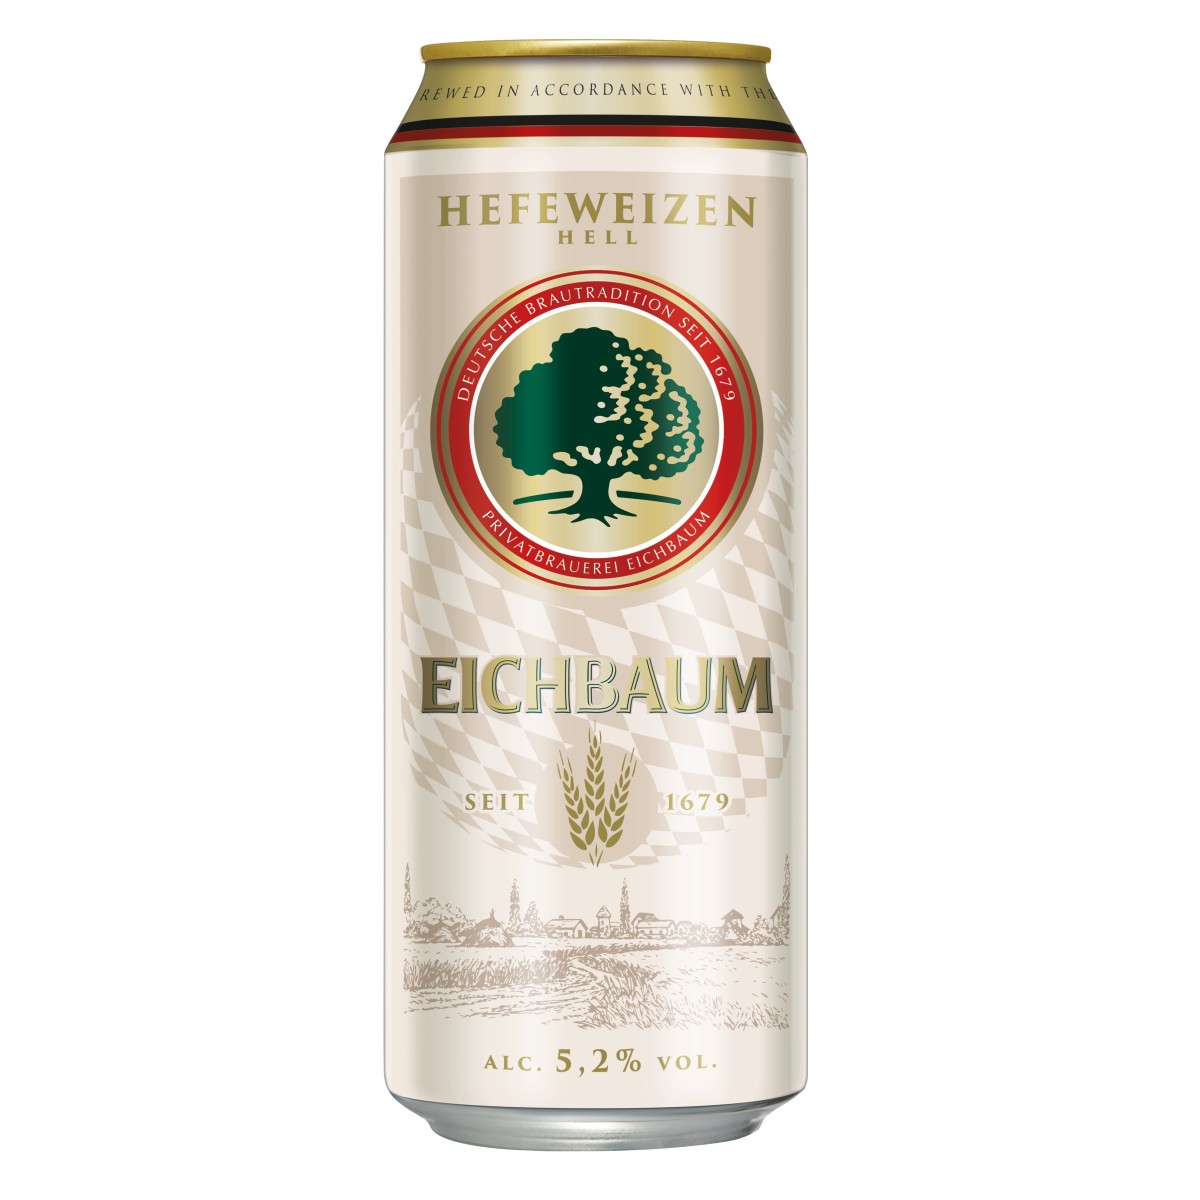 Eichbaum, Hefeweizen hell 5,2% 24X50cl